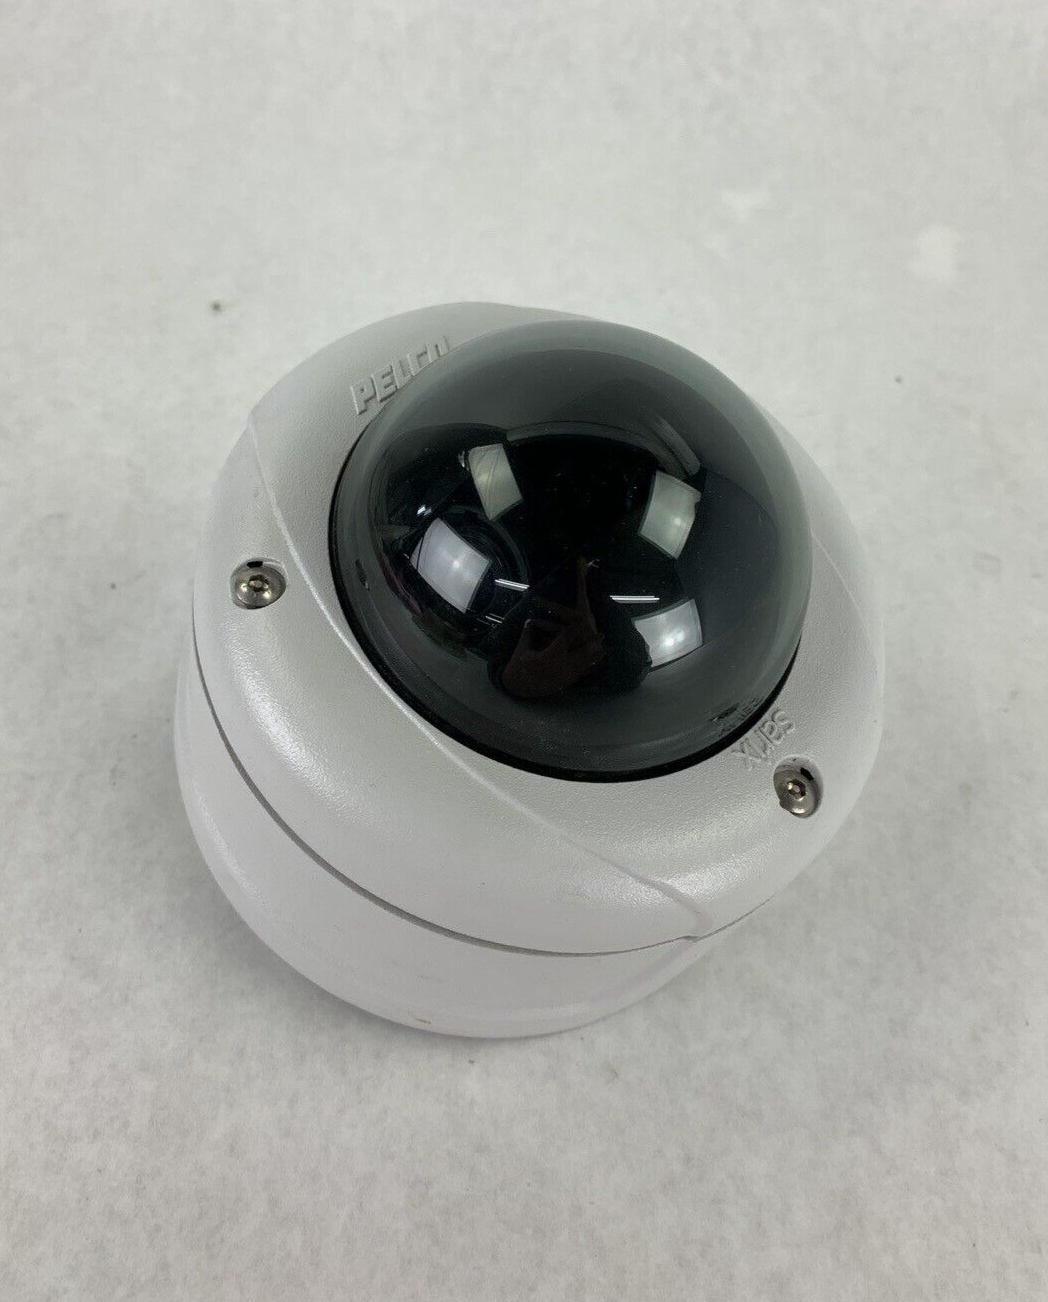 Pelco 3.0C-H4A-D01 Vandal-Resistant Indoor Fixed Dome Camera IMS0DN10-1V